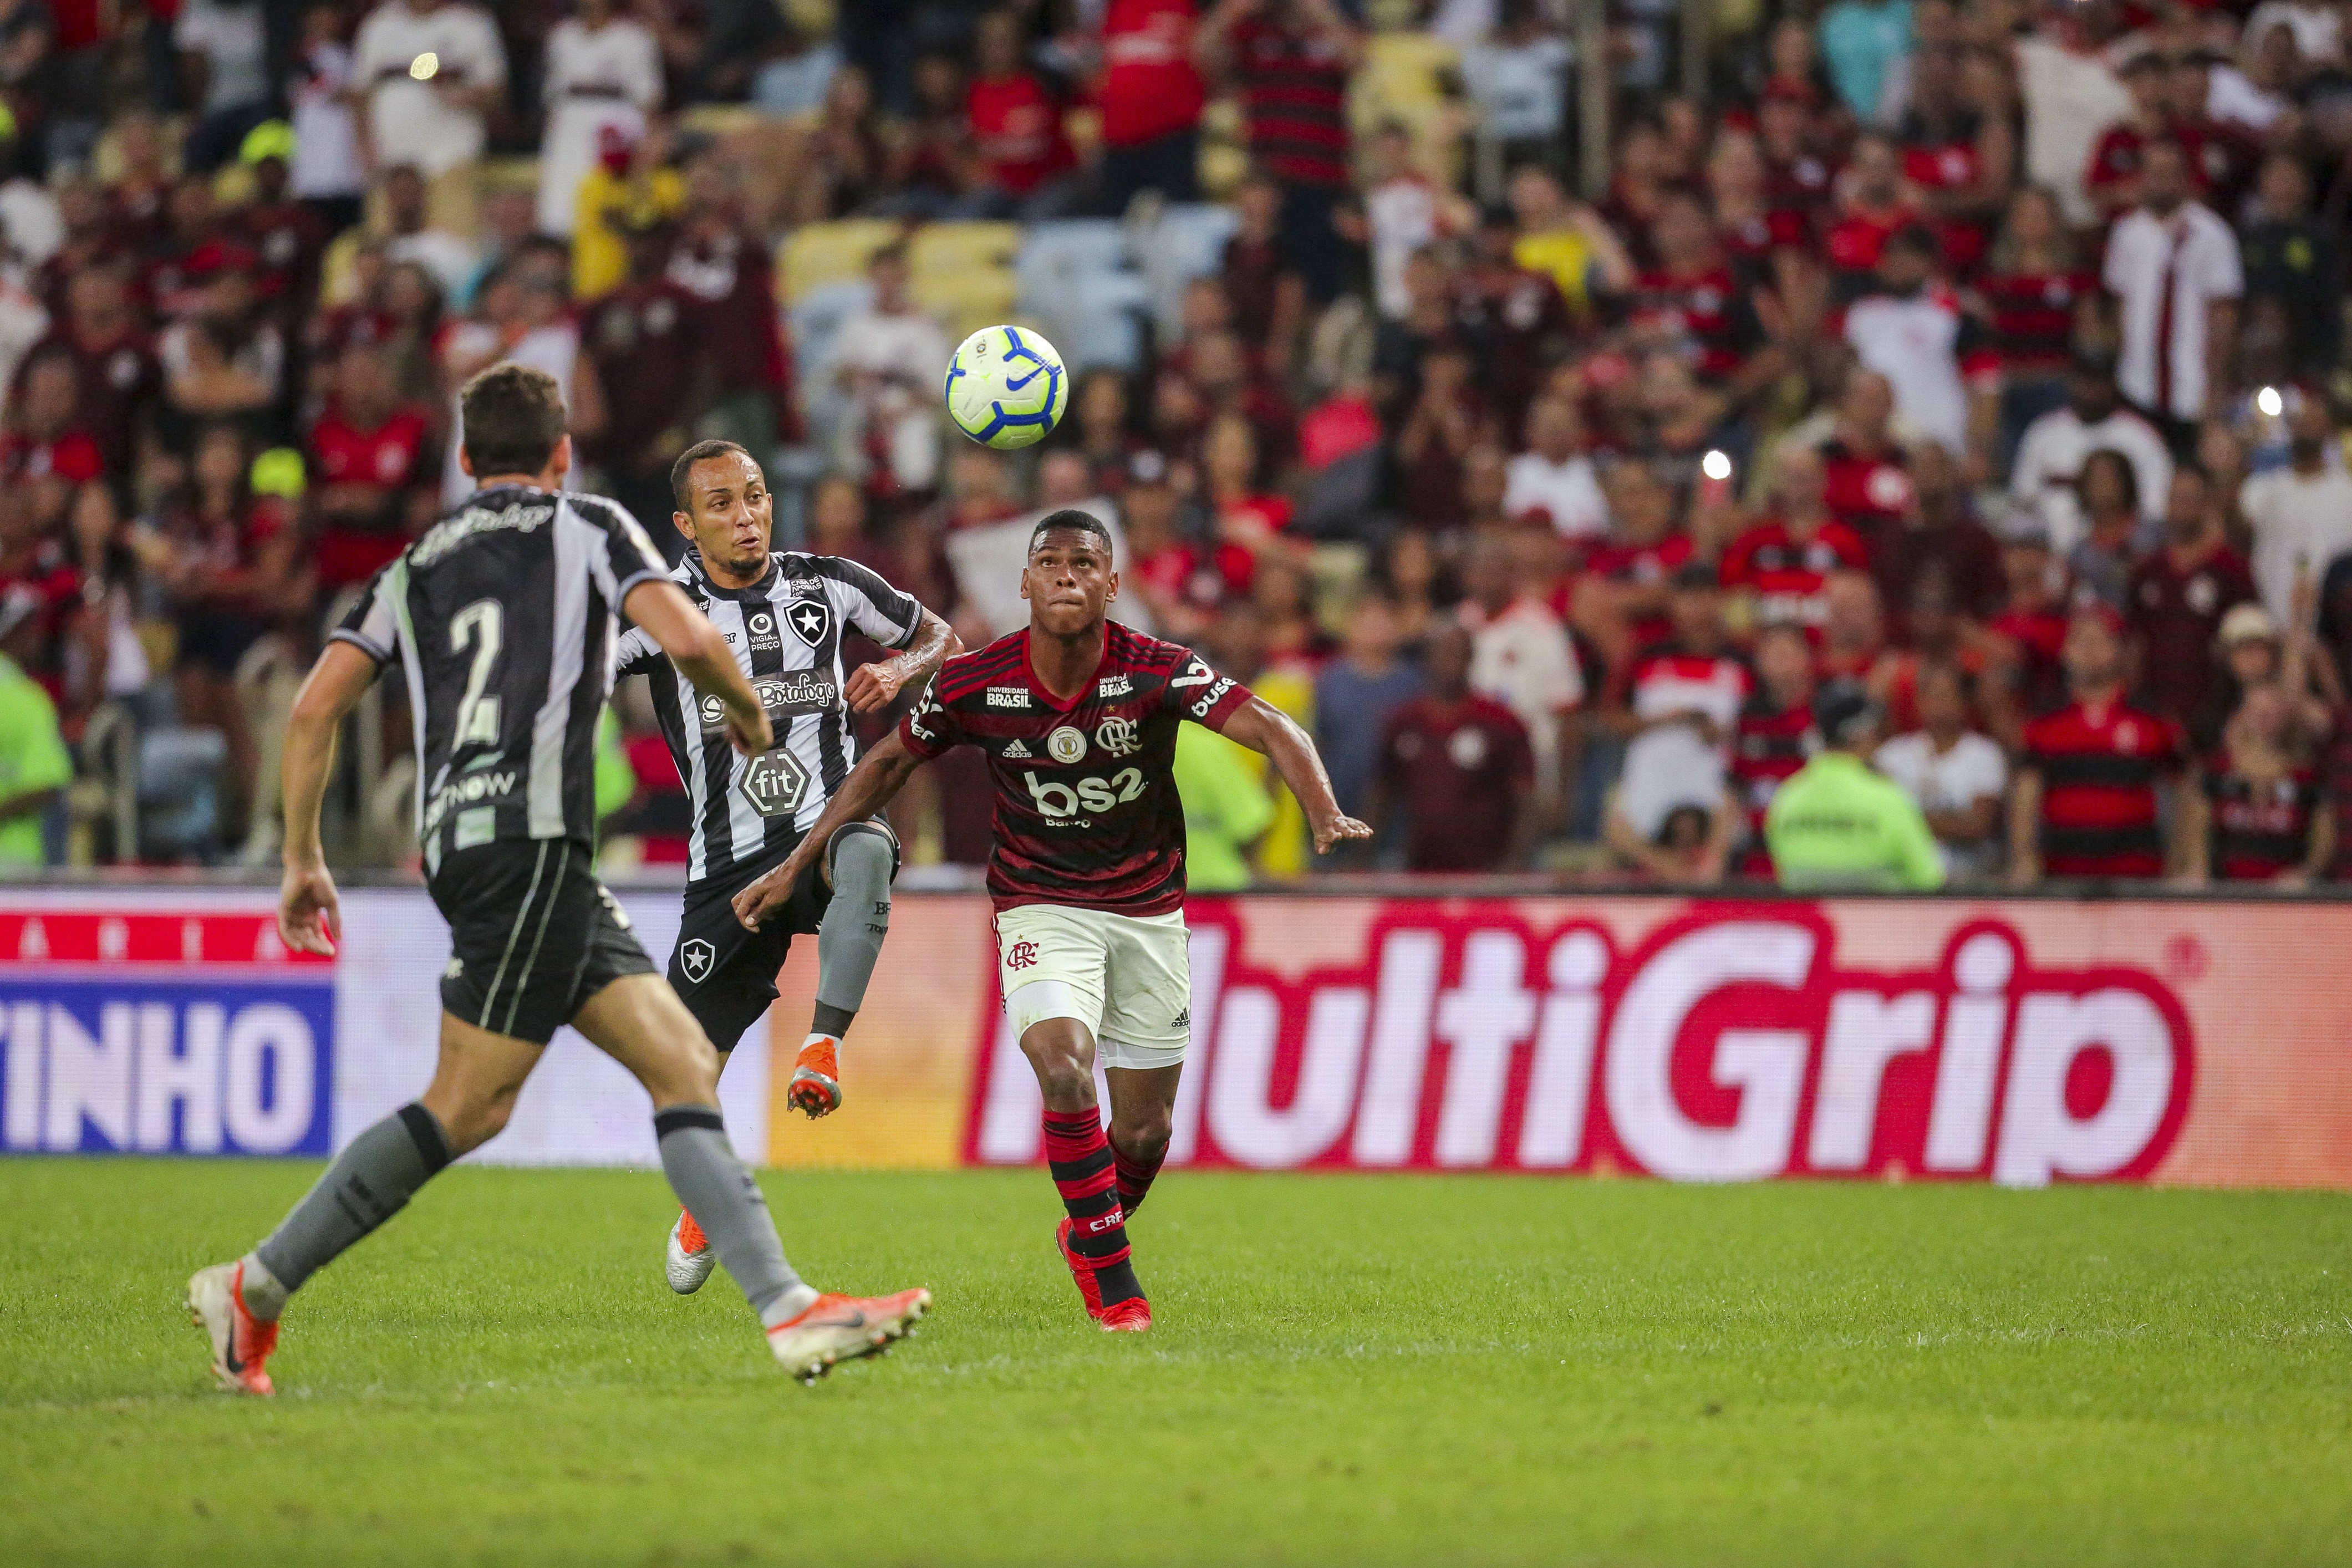 Botafogo chega a acordo com Flamengo: jogo dá em Portugal - CNN Portugal